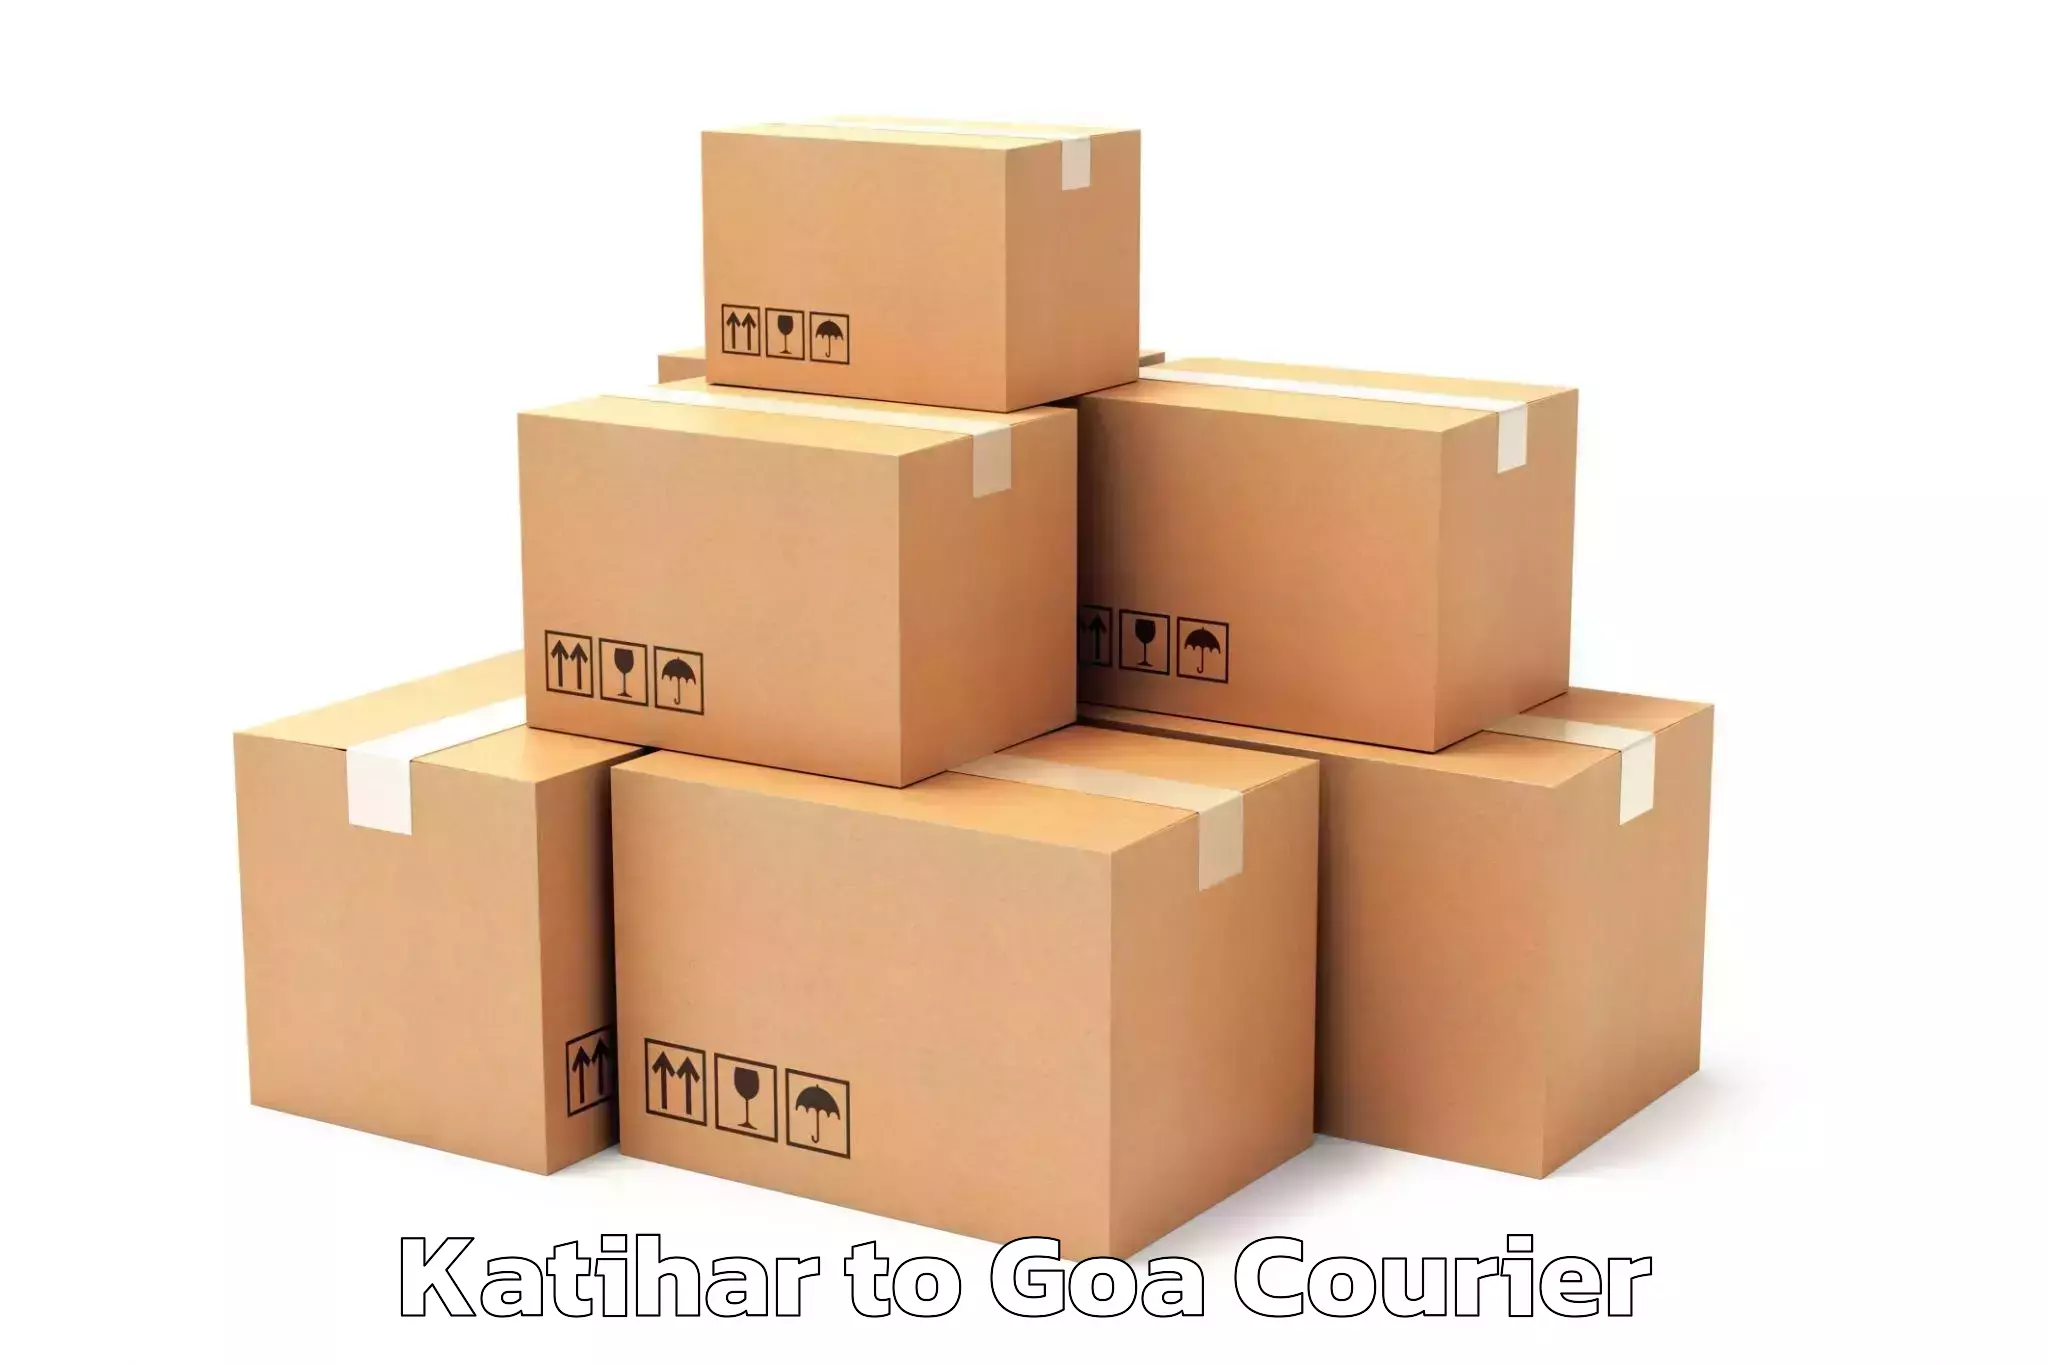 Furniture moving experts Katihar to Panjim